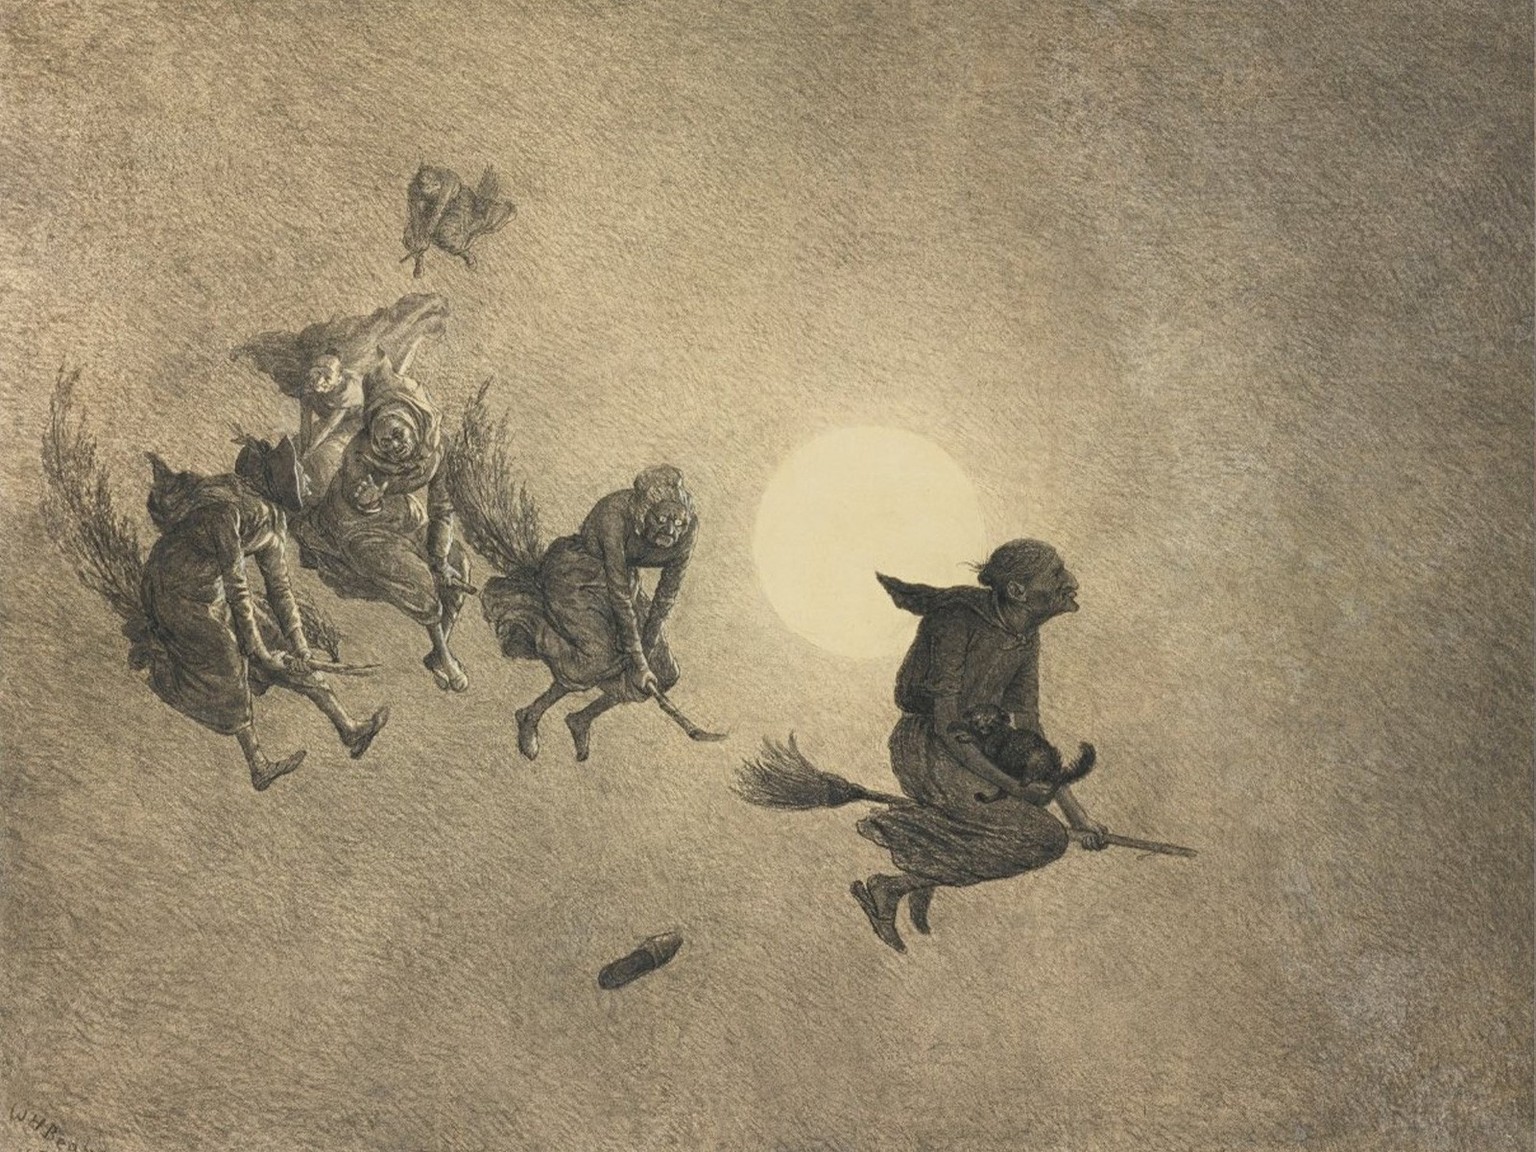 The Witches’ Ride – «la chevauchée des sorcières» de William Holbrook Beard, 1870.
https://de.wiktionary.org/wiki/Datei:%27The_Witches%27_Ride%27_by_William_Holbrook_Beard,_1870.jpg